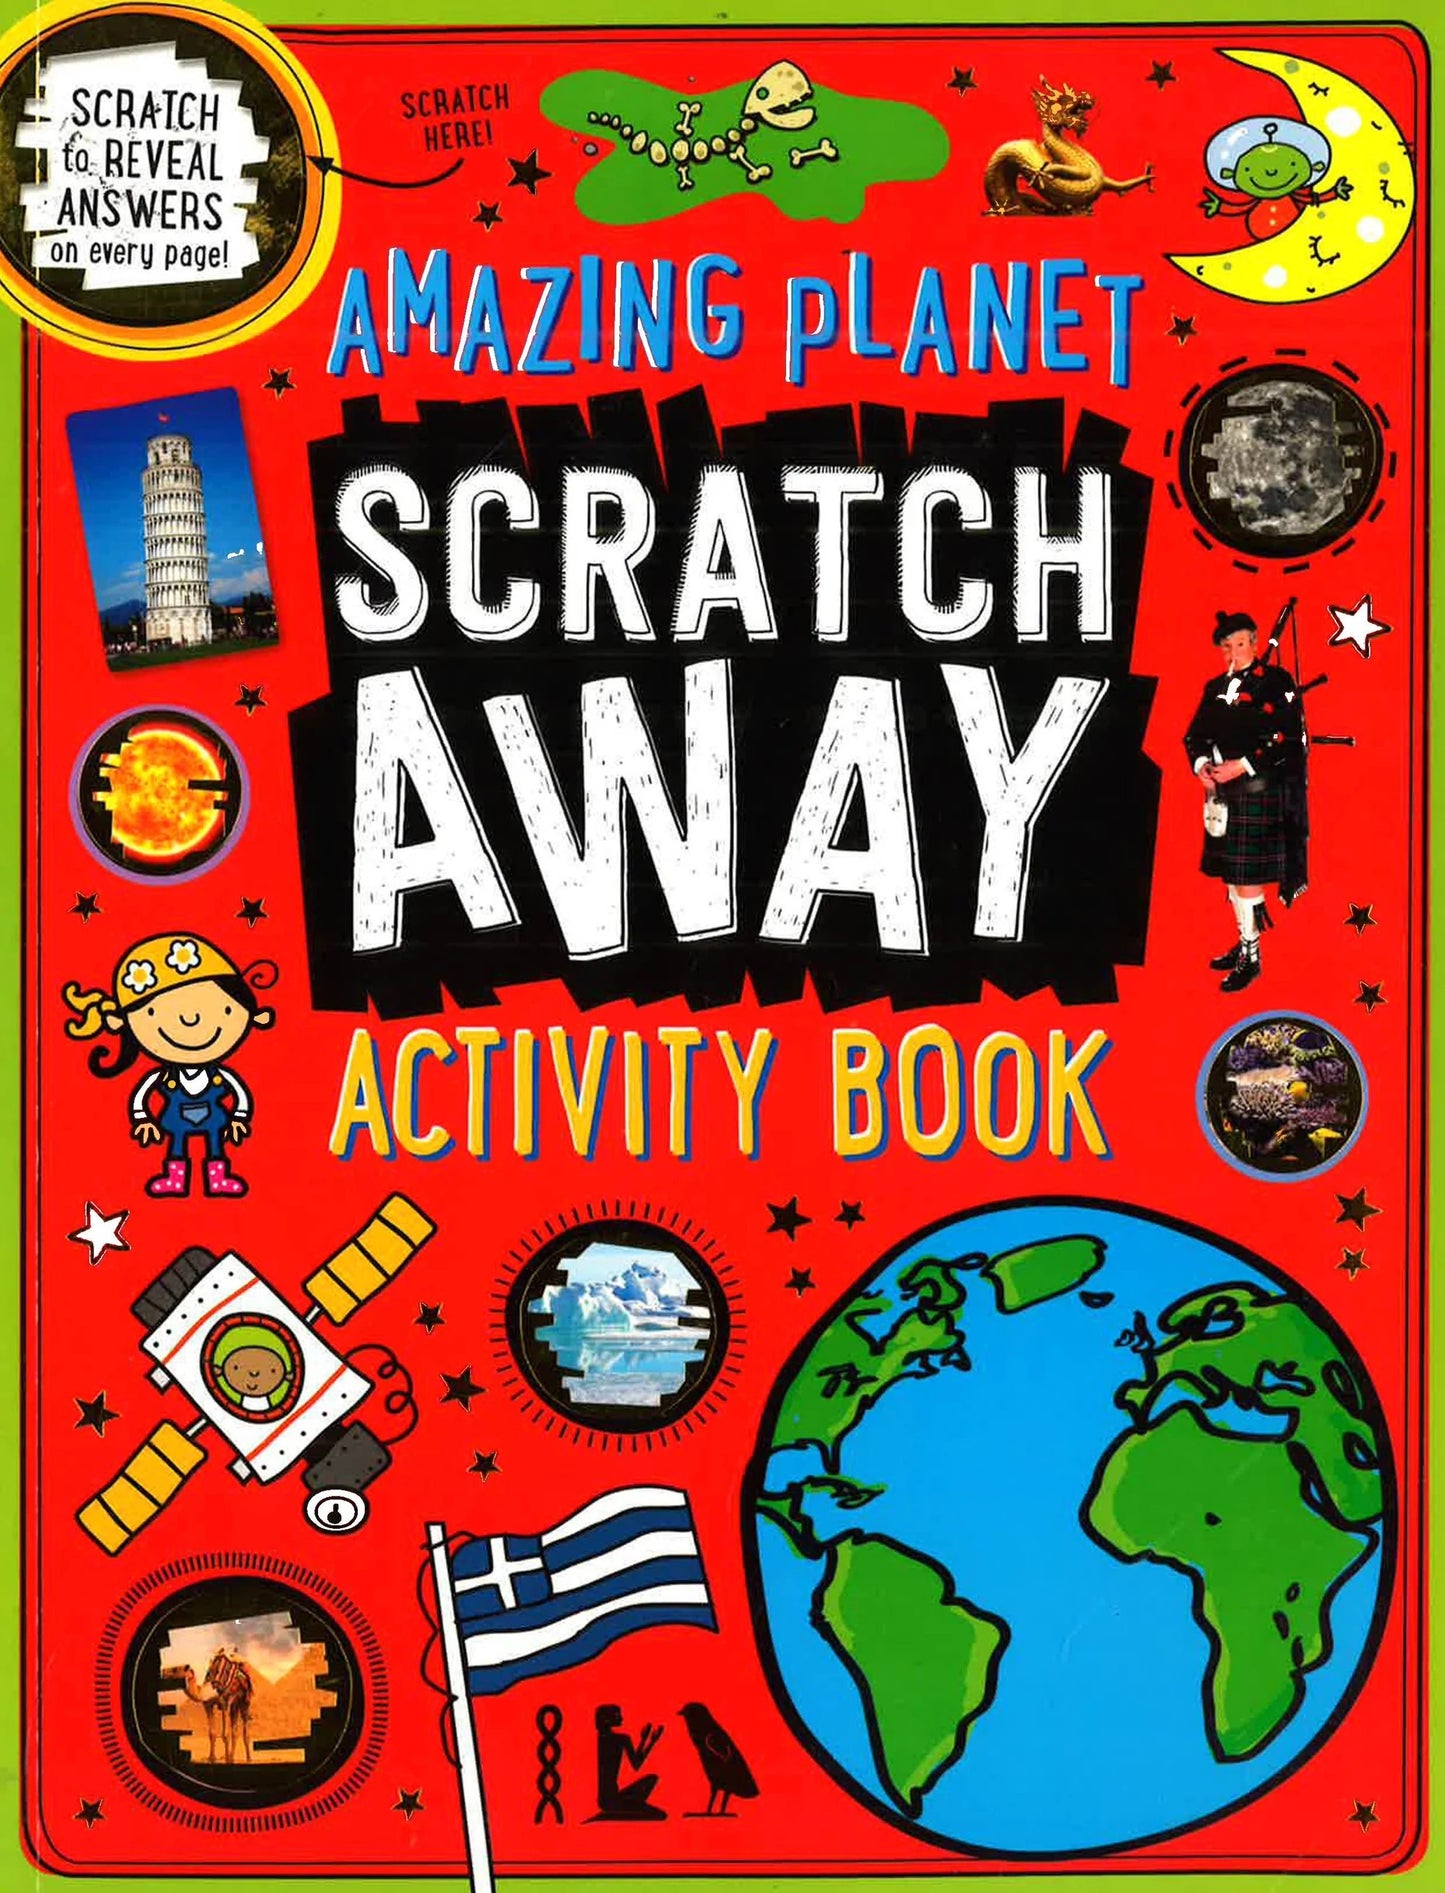 Scratch Art Around The World Activity Book